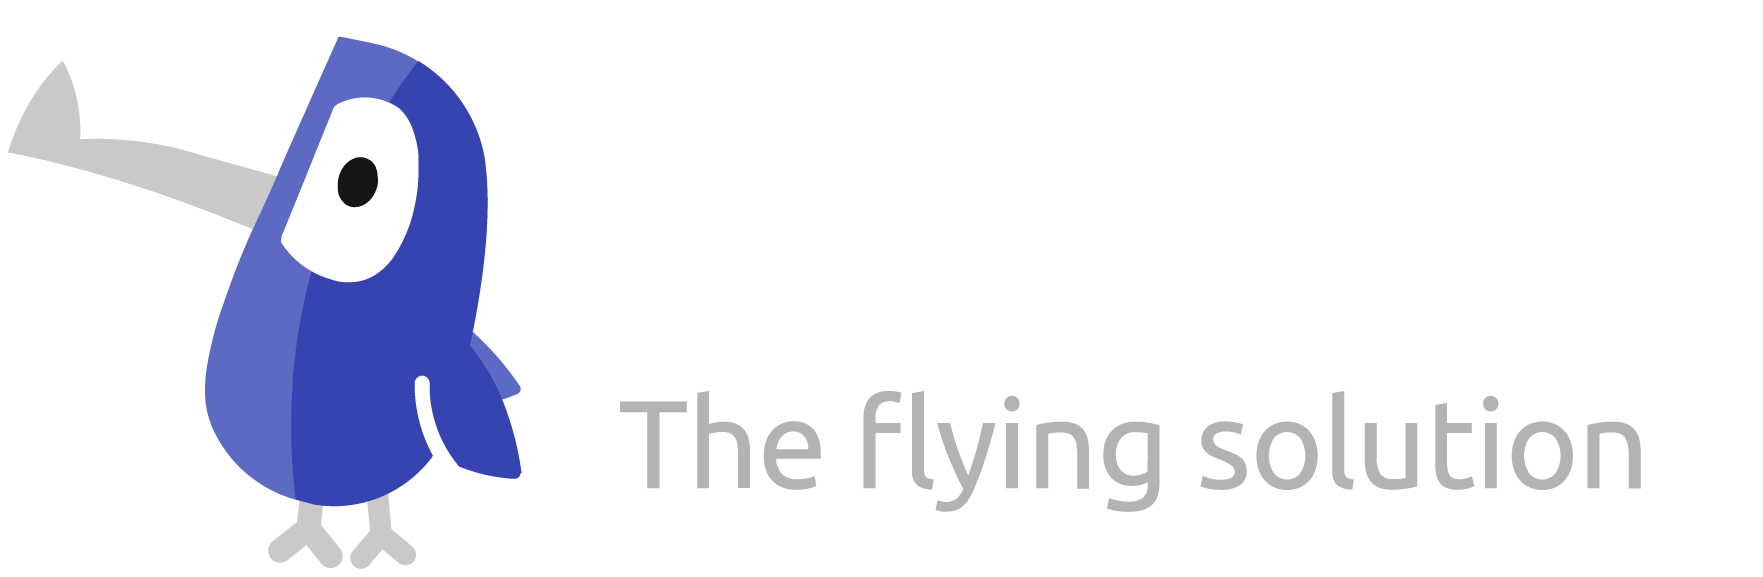 Kikayo